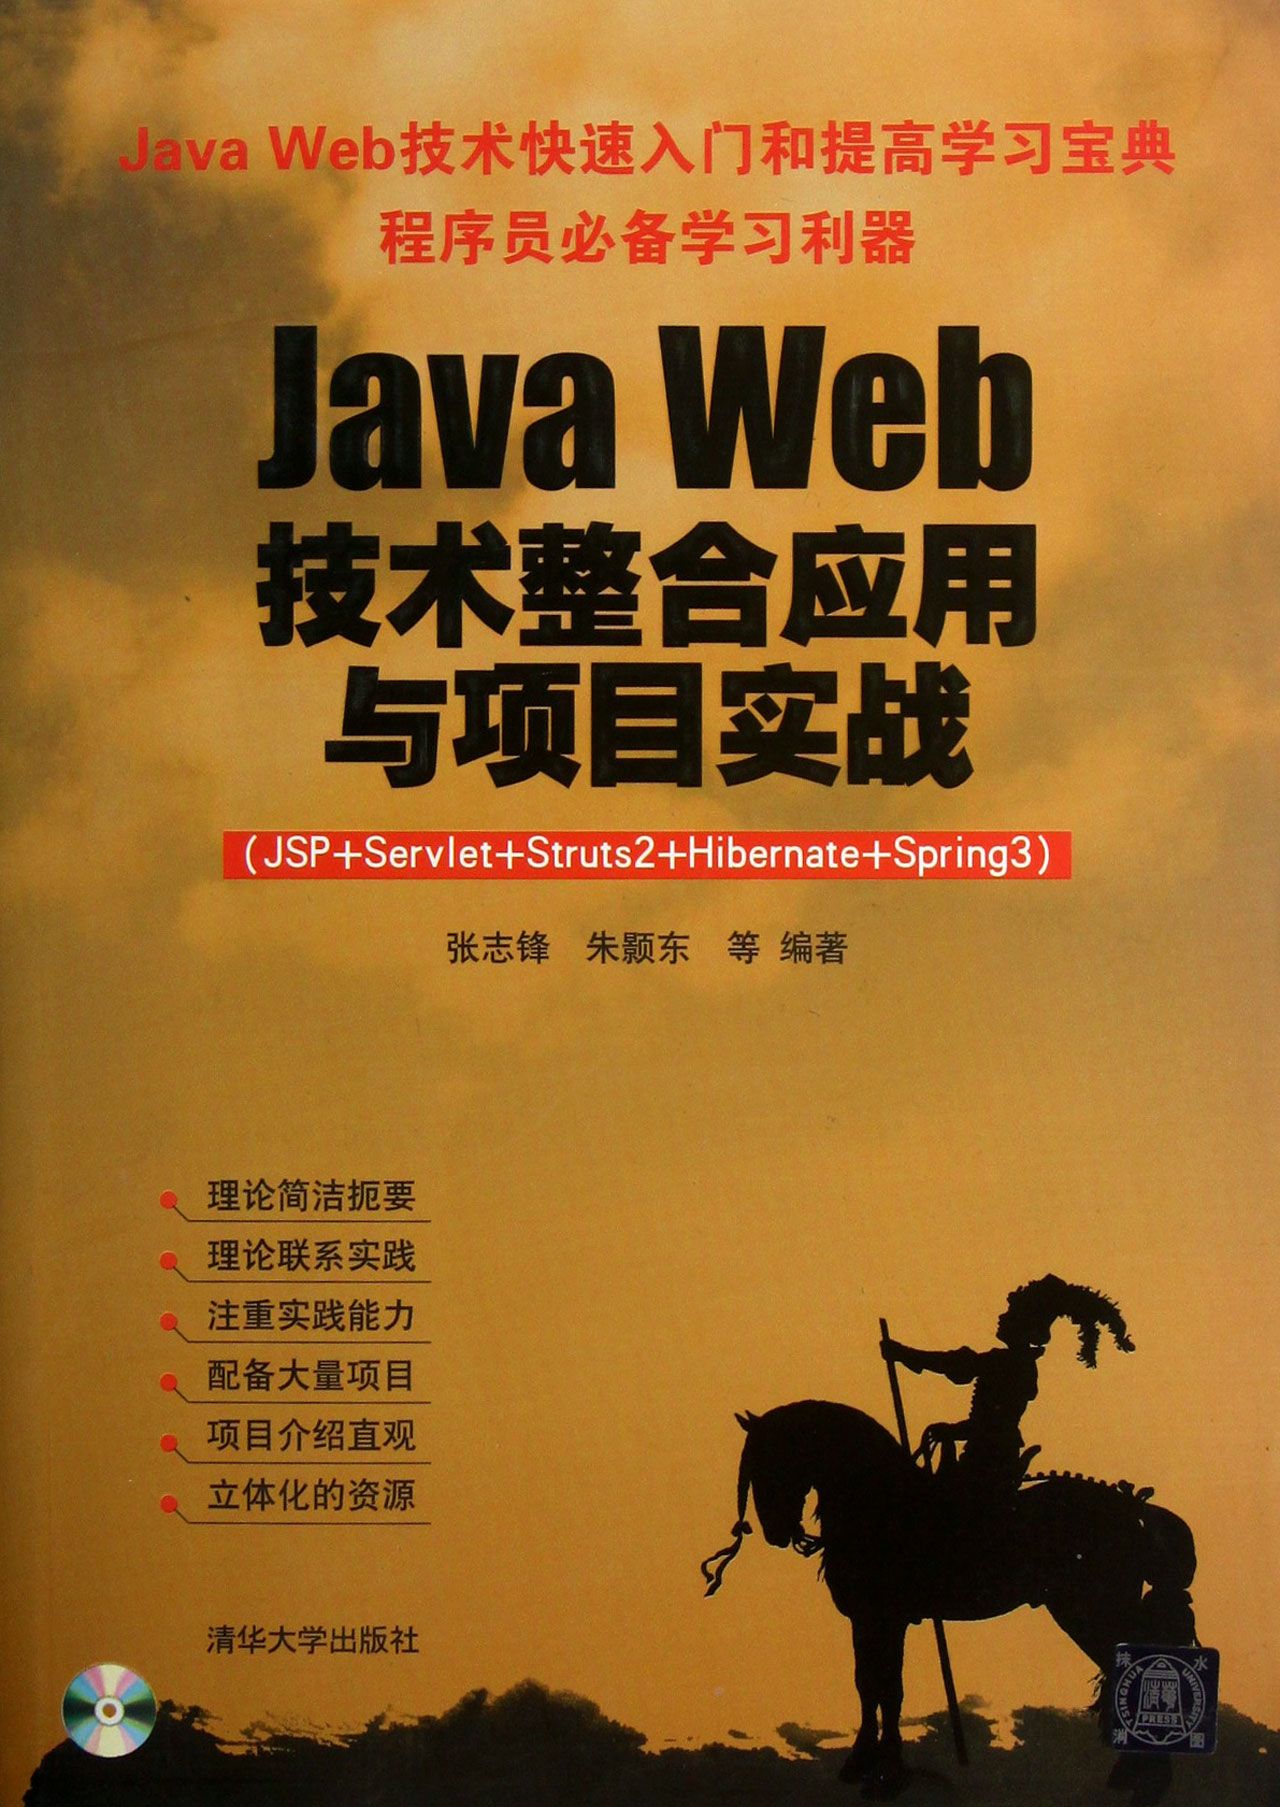 Java Web技术整合应用与项目实战(附光盘JSP